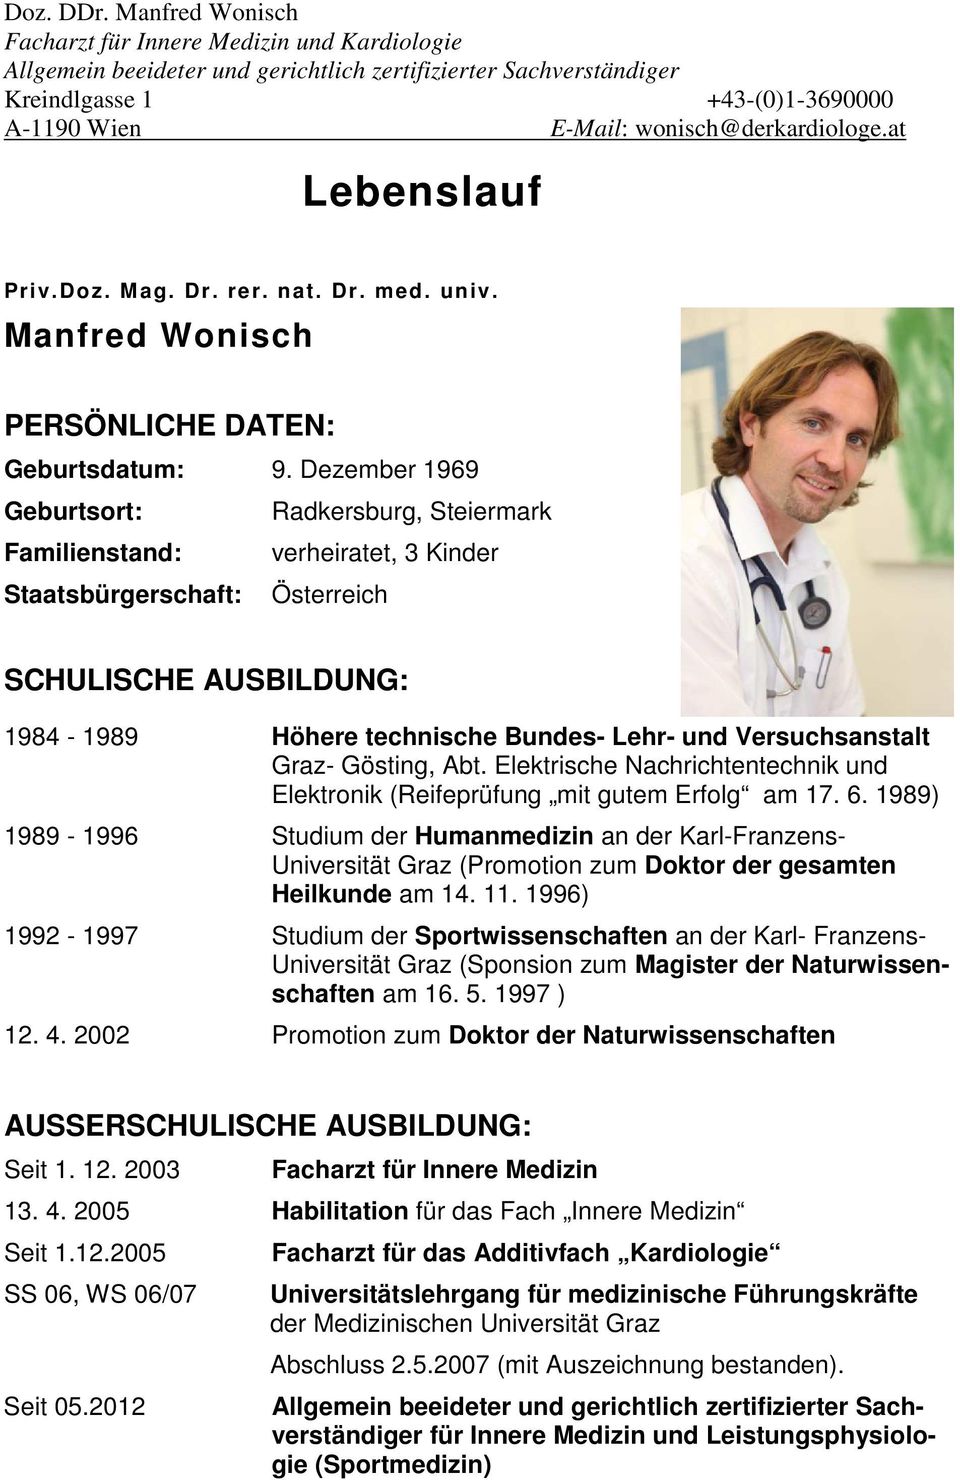 Promotion Zum Doktor Der Naturwissenschaften Pdf